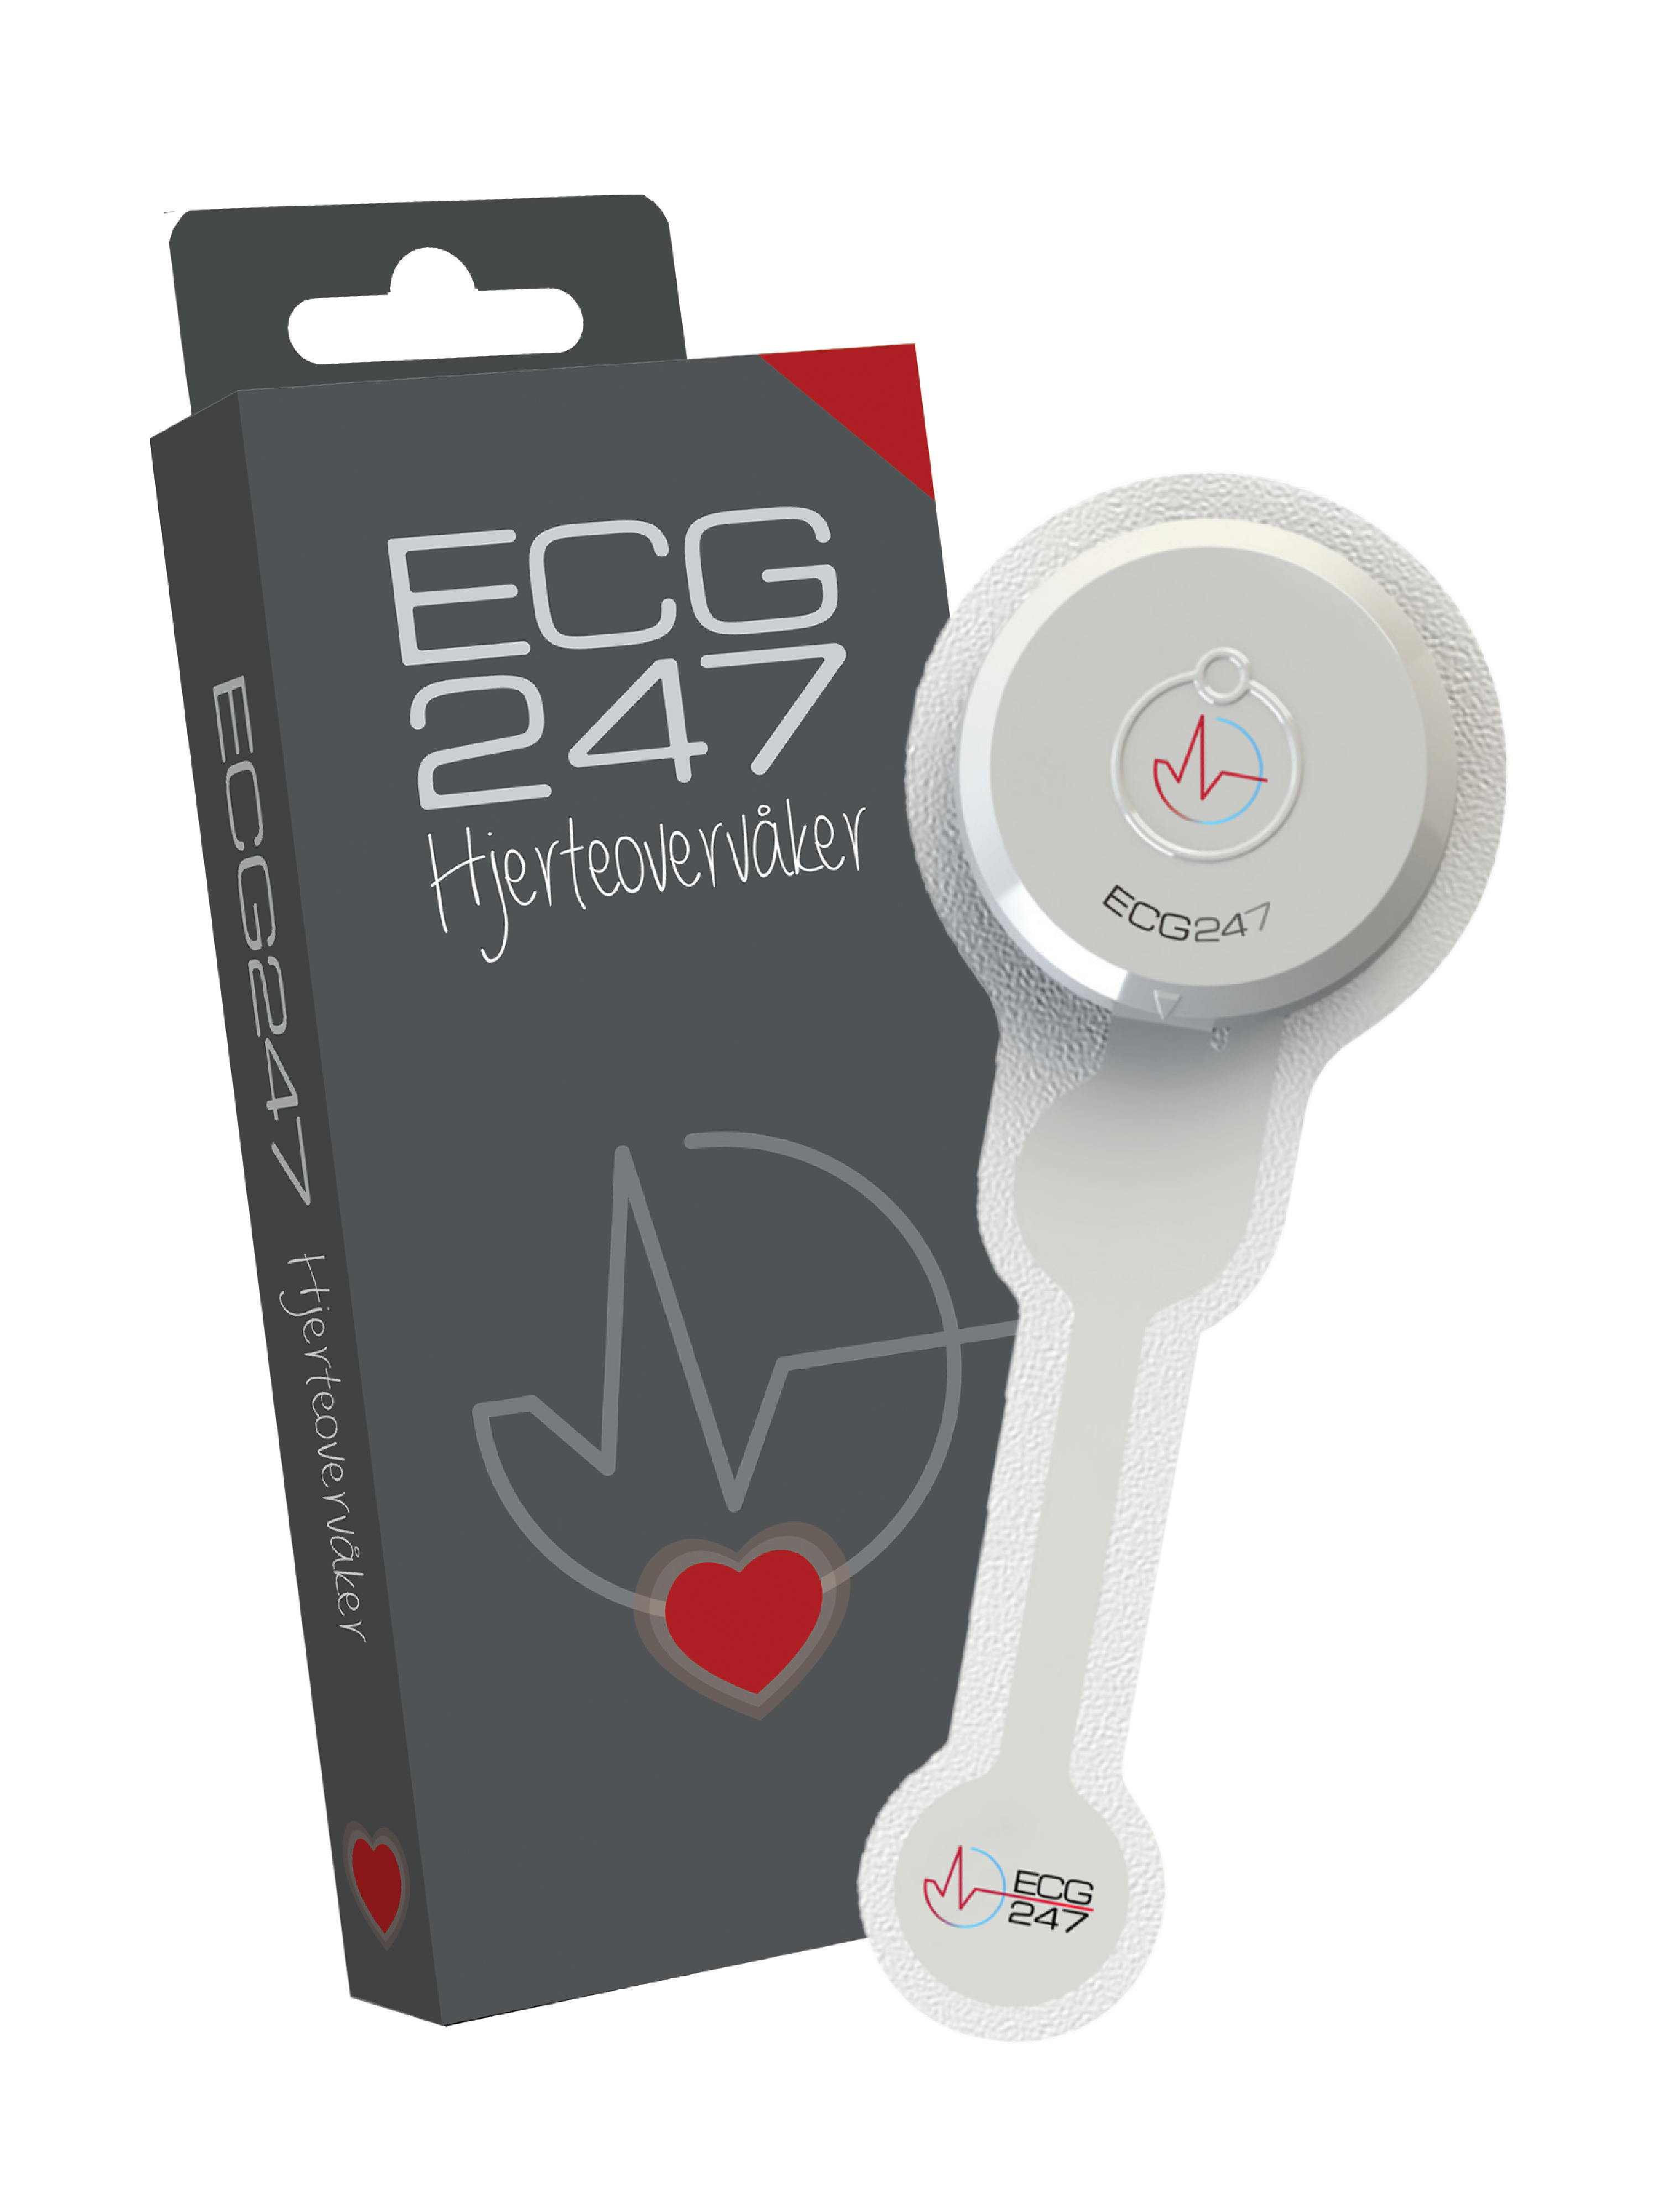 ECG247 Hjerteovervåker, 1 stk sensor og 1 stk elektrodeplaster